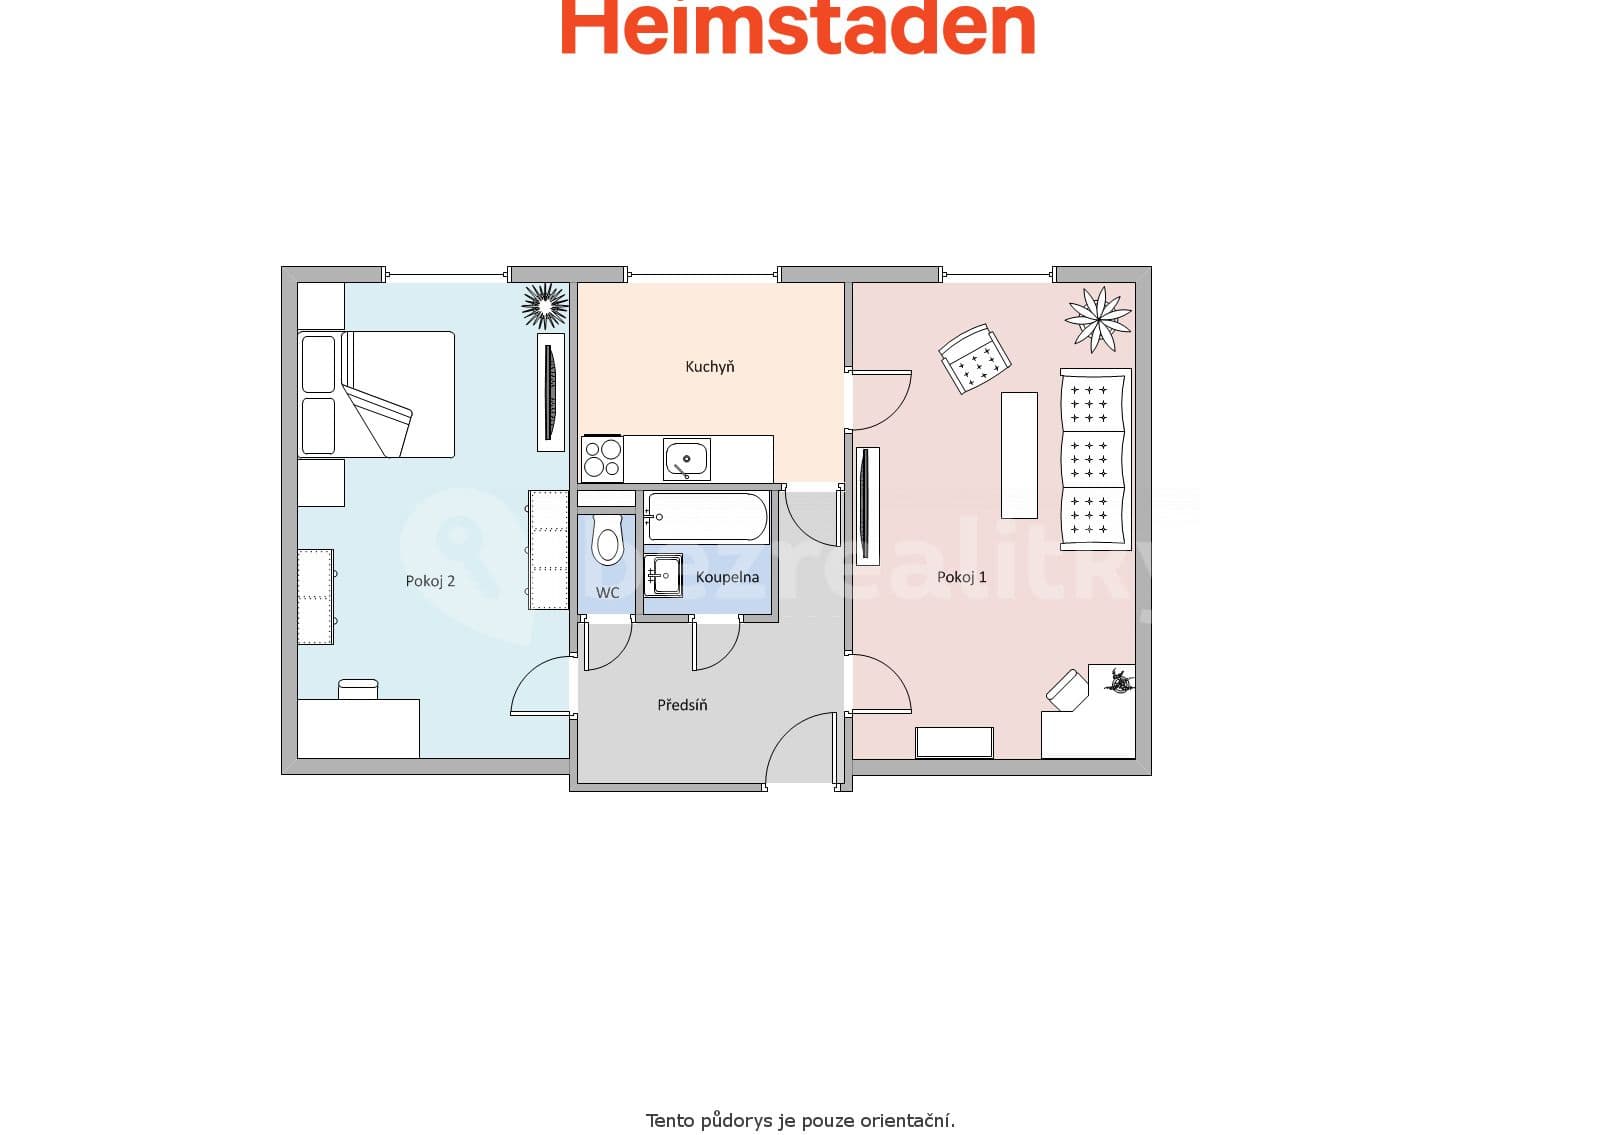 2 bedroom flat to rent, 53 m², Klidná, Havířov, Moravskoslezský Region